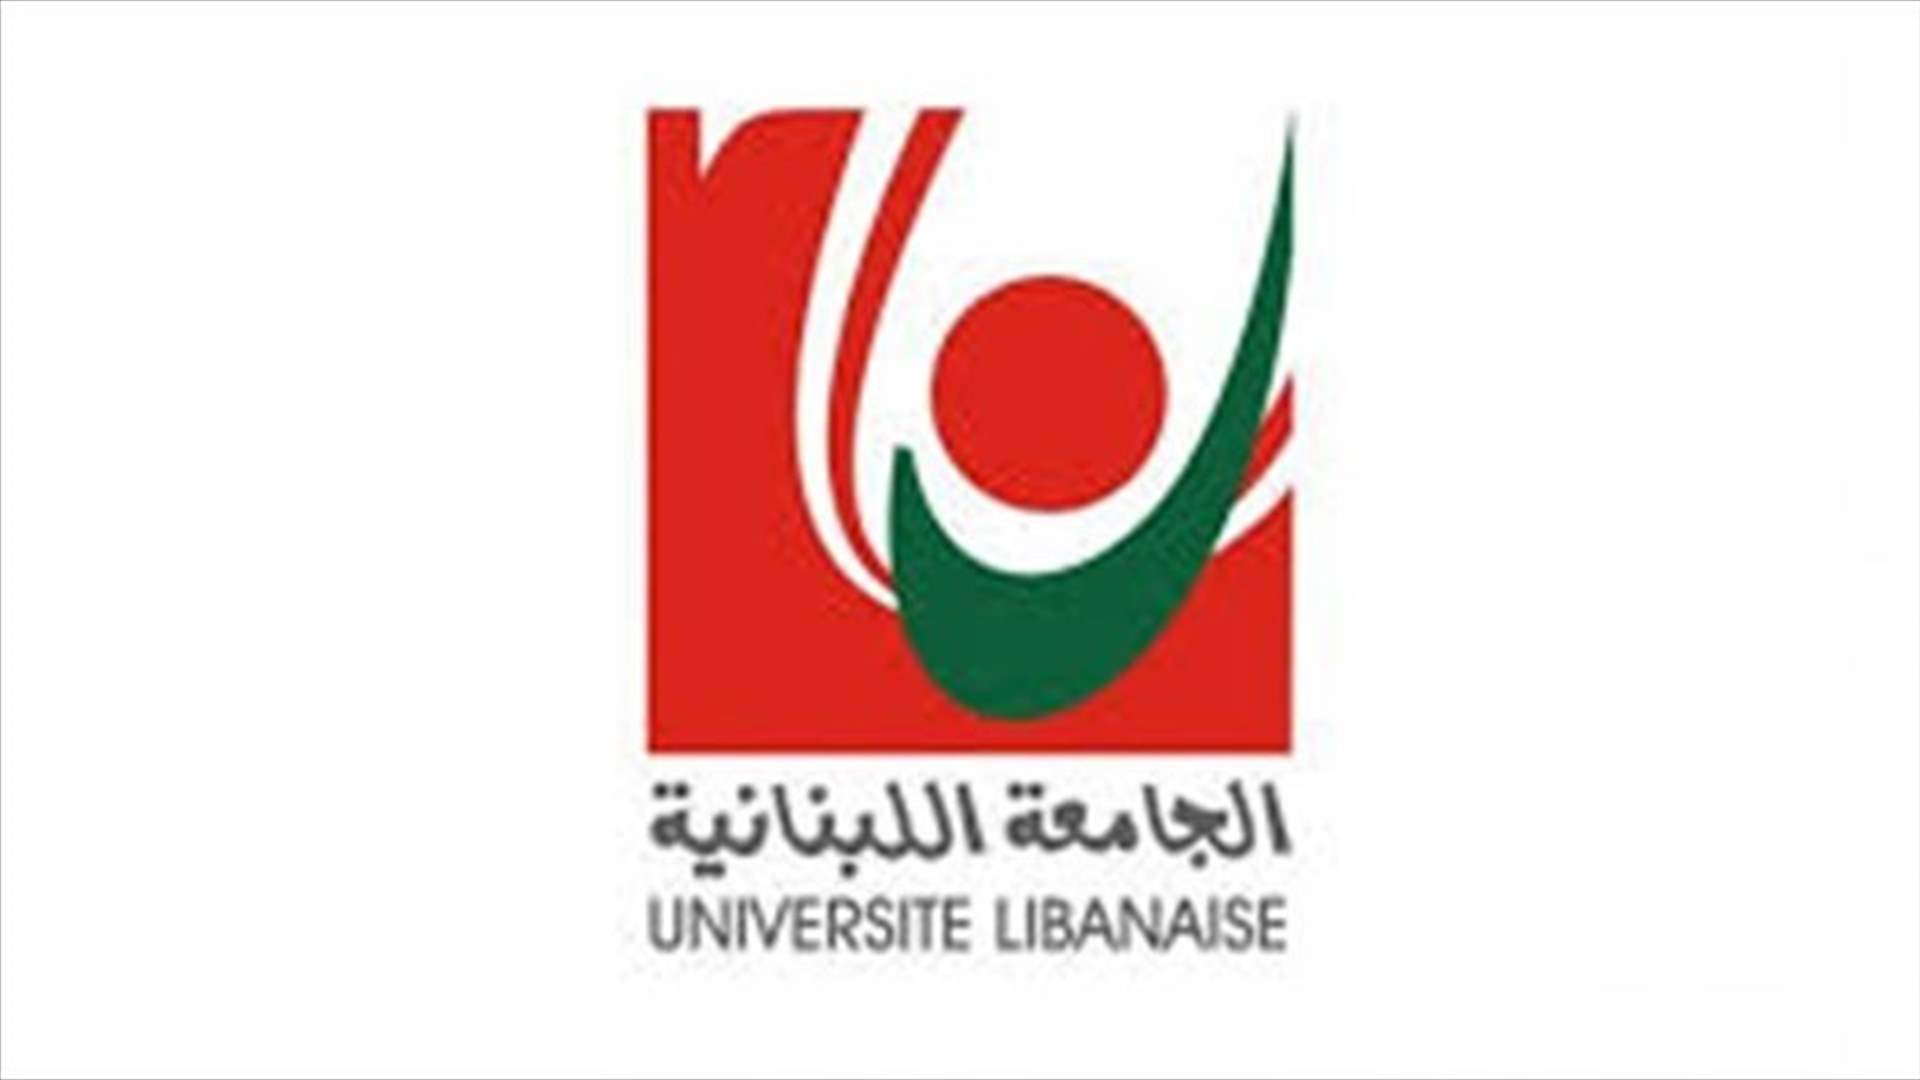 الجامعة اللبنانية: استمرار تعليق الدروس والأعمال الإدارية حتى إشعار آخر